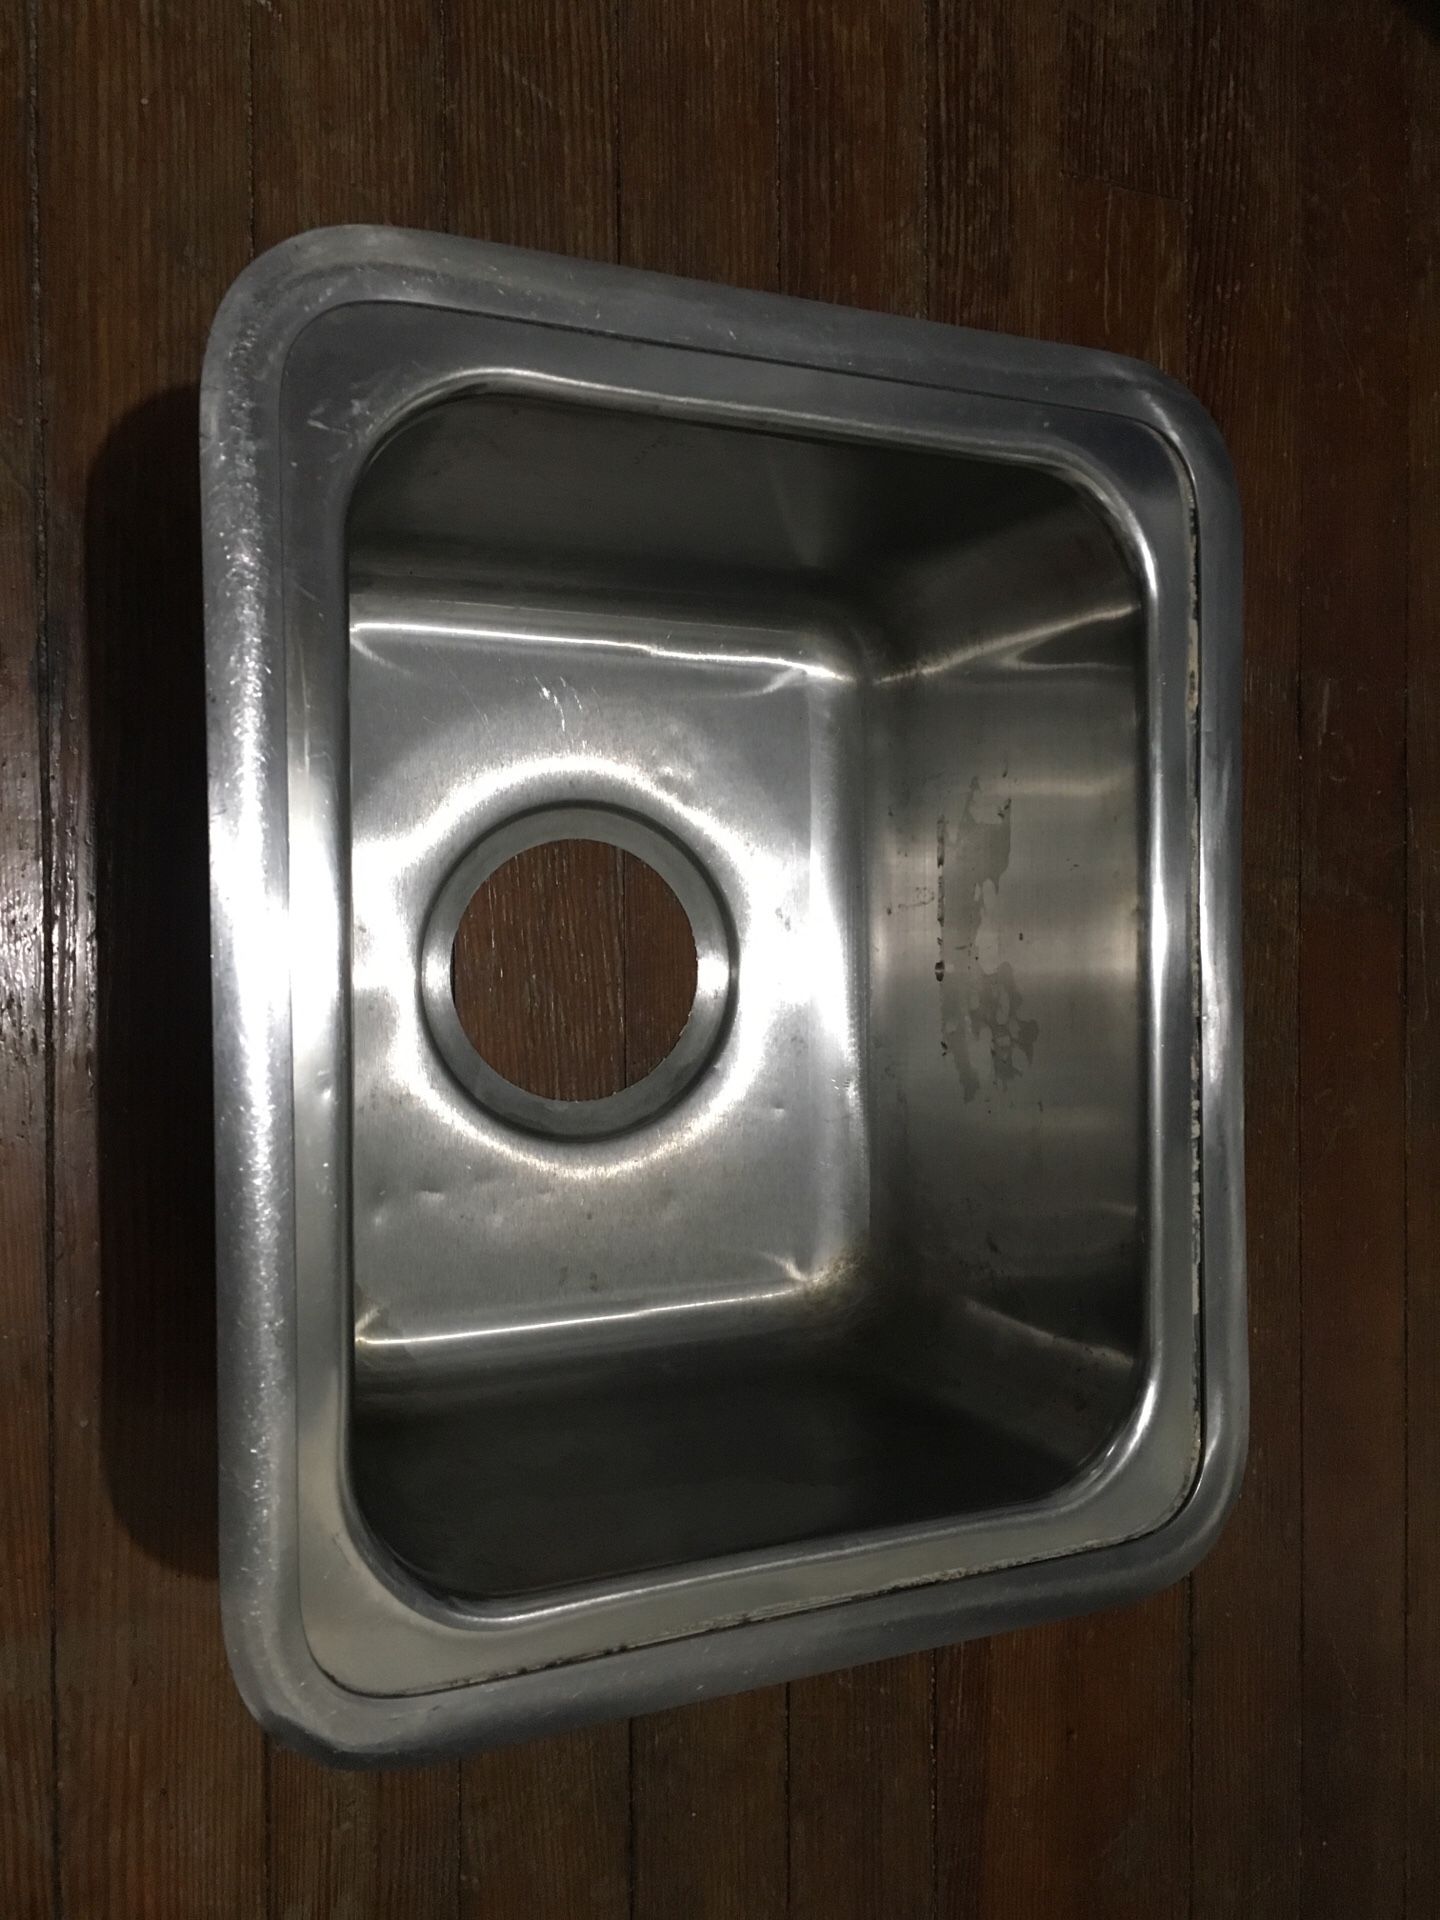 Metal prep sink